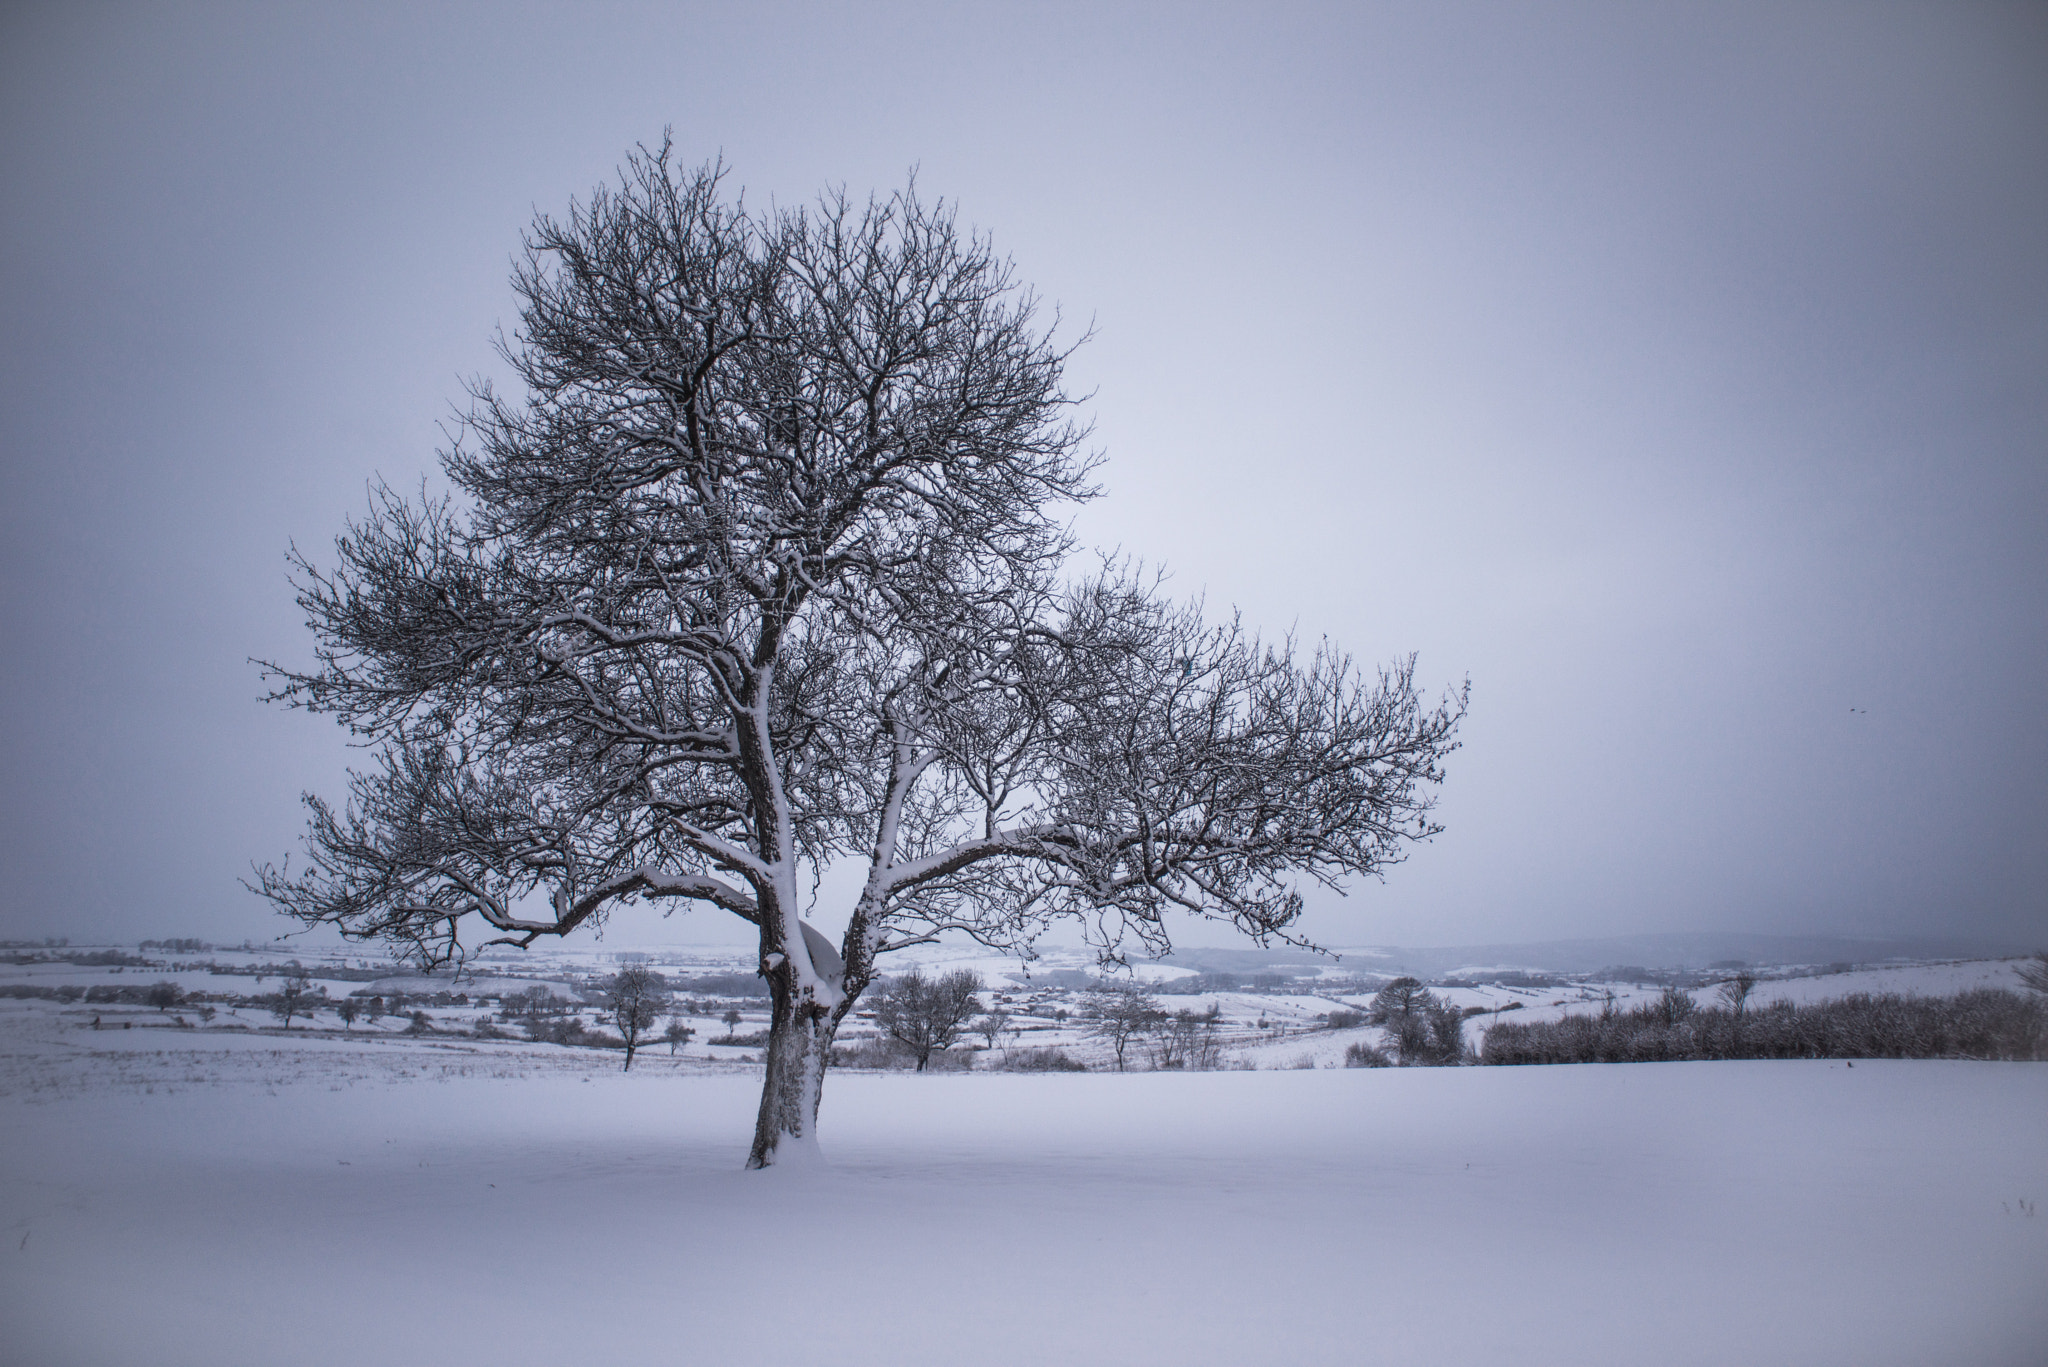 Nikon D810 + AF Nikkor 20mm f/2.8 sample photo. Tree at winter photography